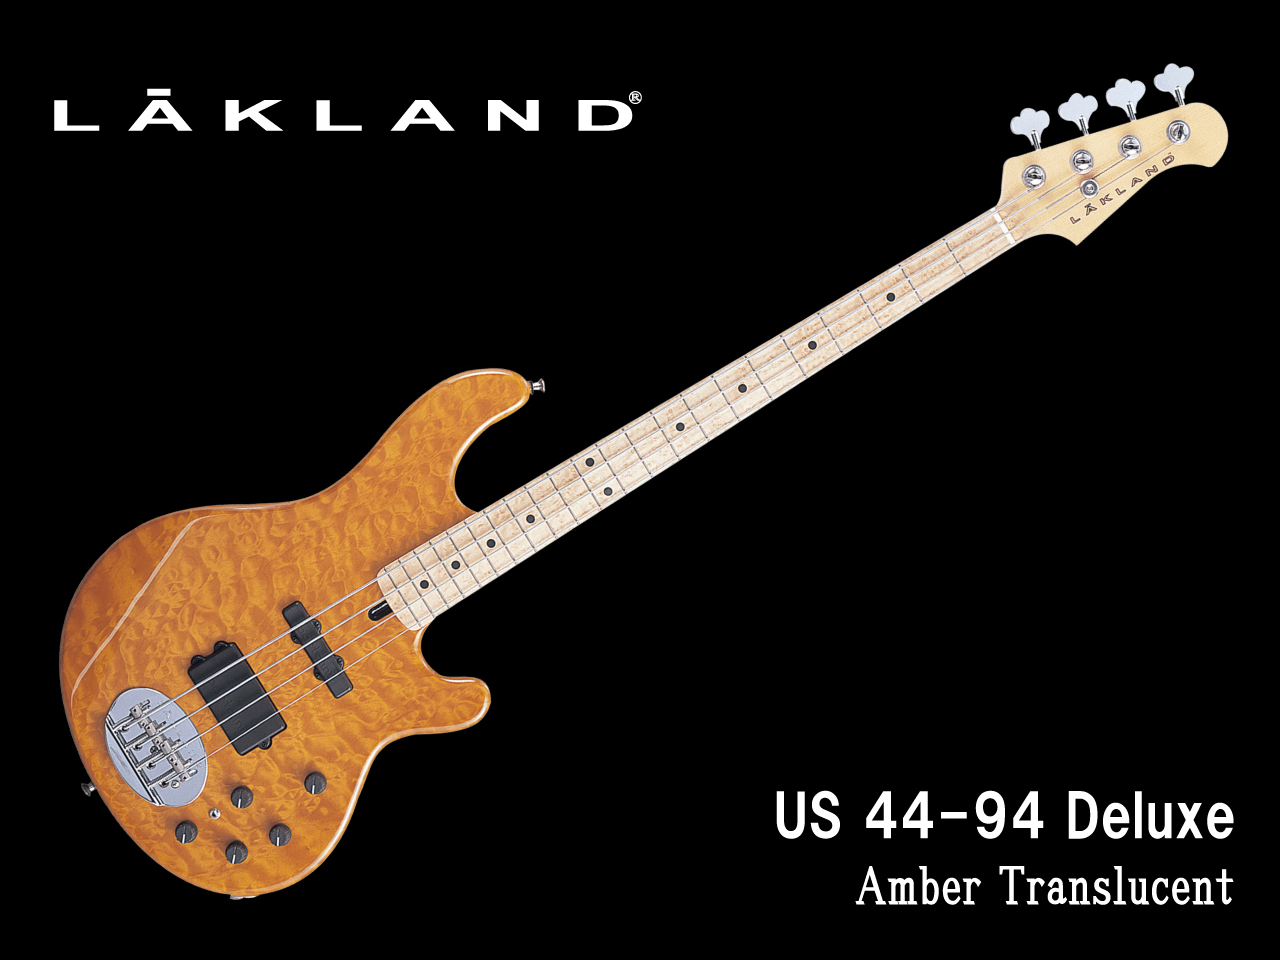 【受注生産】LAKLAND(レイクランド) USA US 44-94 Deluxe (Amber Translucent)